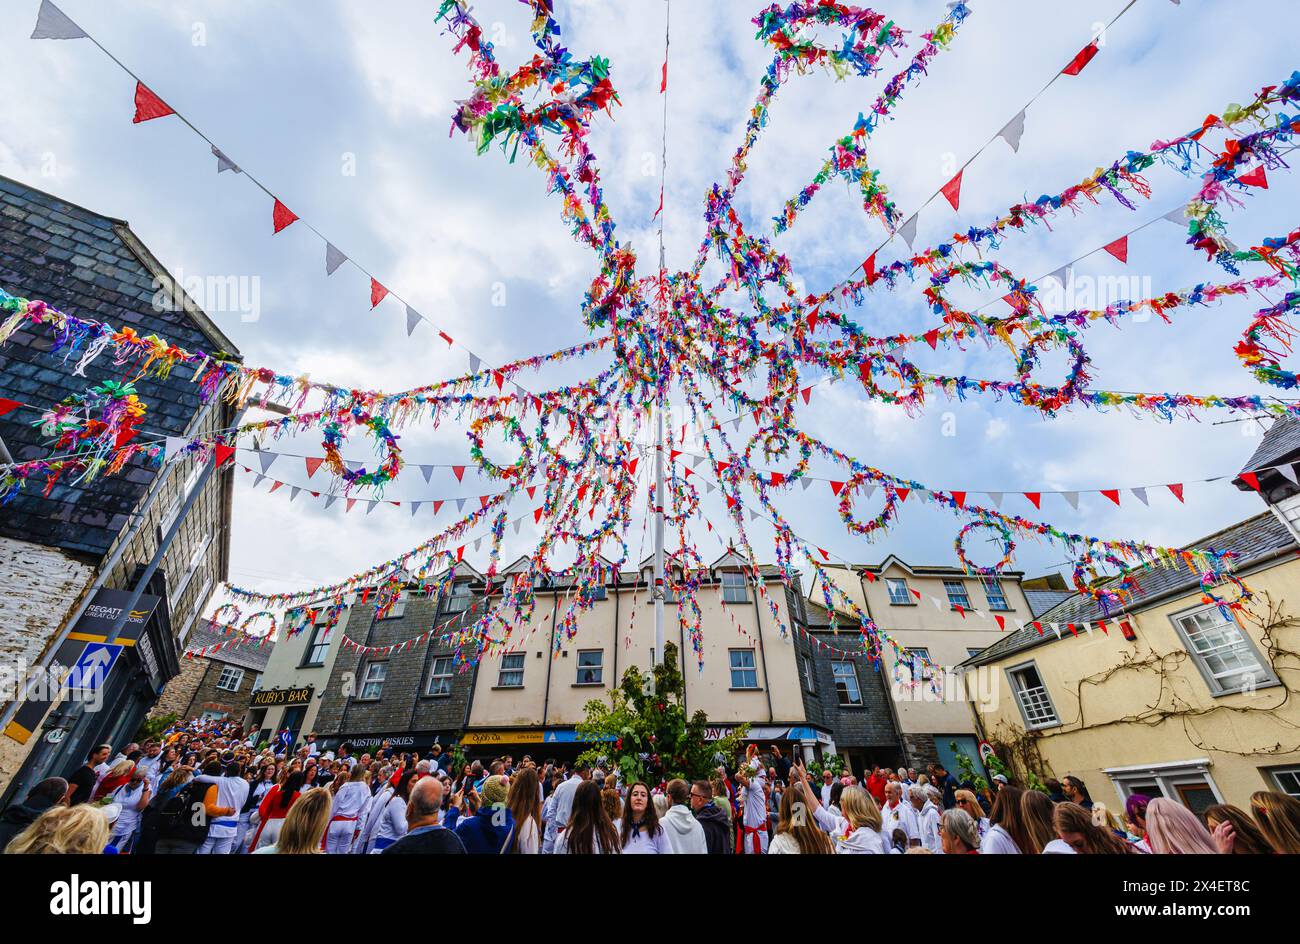 Les foules se rassemblent sous le Maypole coloré pour le festival 'Obby 'Oss', un festival folklorique annuel traditionnel le 1er mai à Padstow, Cornouailles, Angleterre Banque D'Images